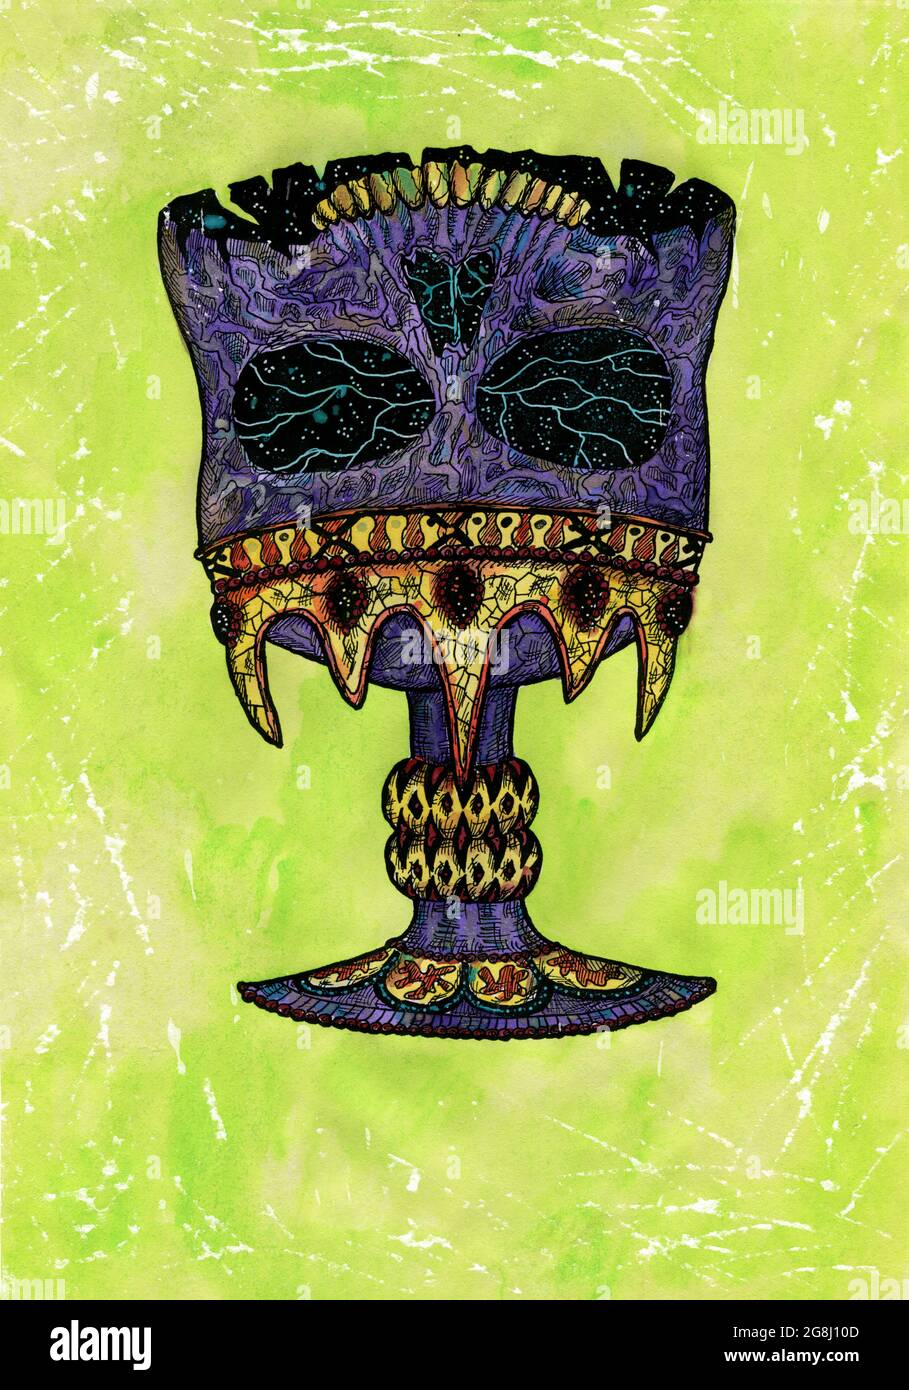 Illustration aquarelle stylisée d'un crâne créepy comme une tasse dans la couronne sur fond vert. Dessin mystique pour Halloween avec ésotérique, gothique, occulte Banque D'Images